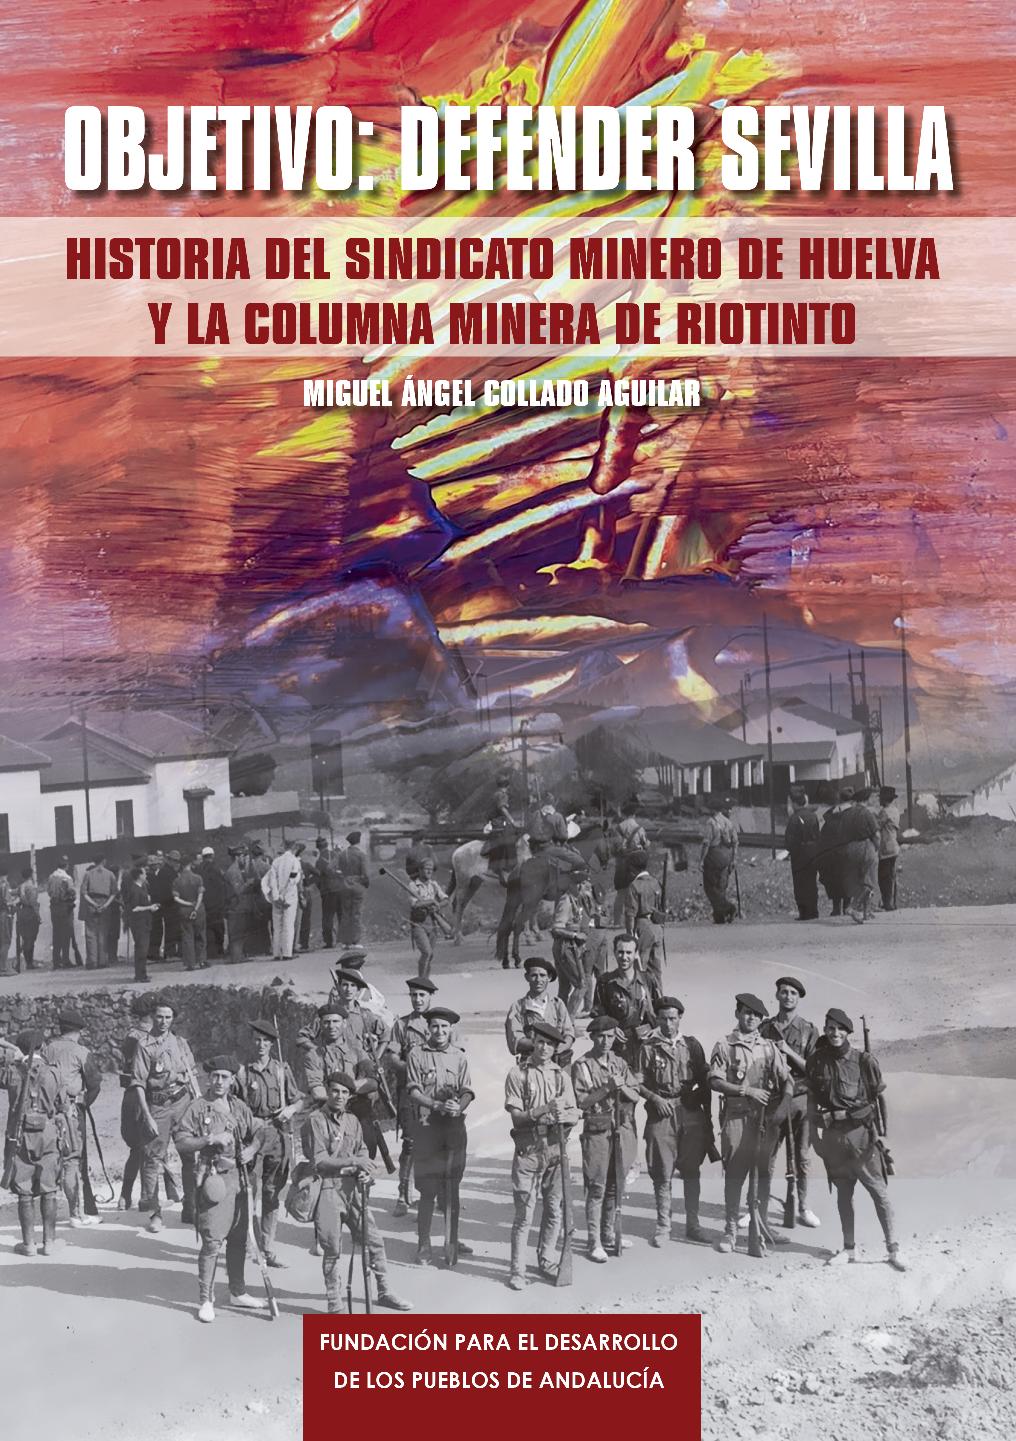 Objetivo: Defender Sevilla. Historia del sindicato minero de Huelva y la Columna minera de Riotinto.